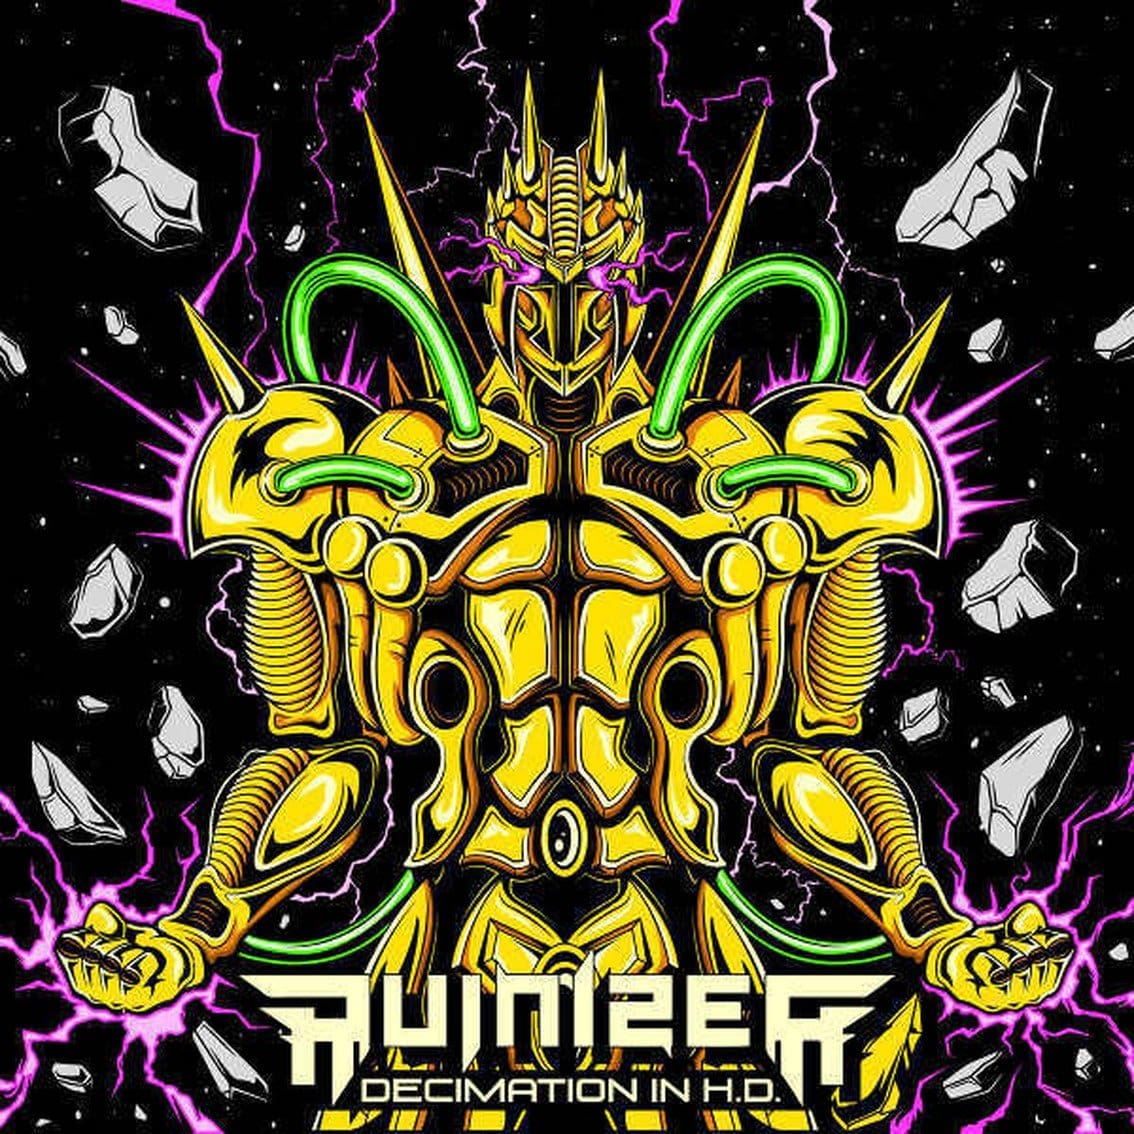 Ruinizer return with 'Decimation In H.D.' album